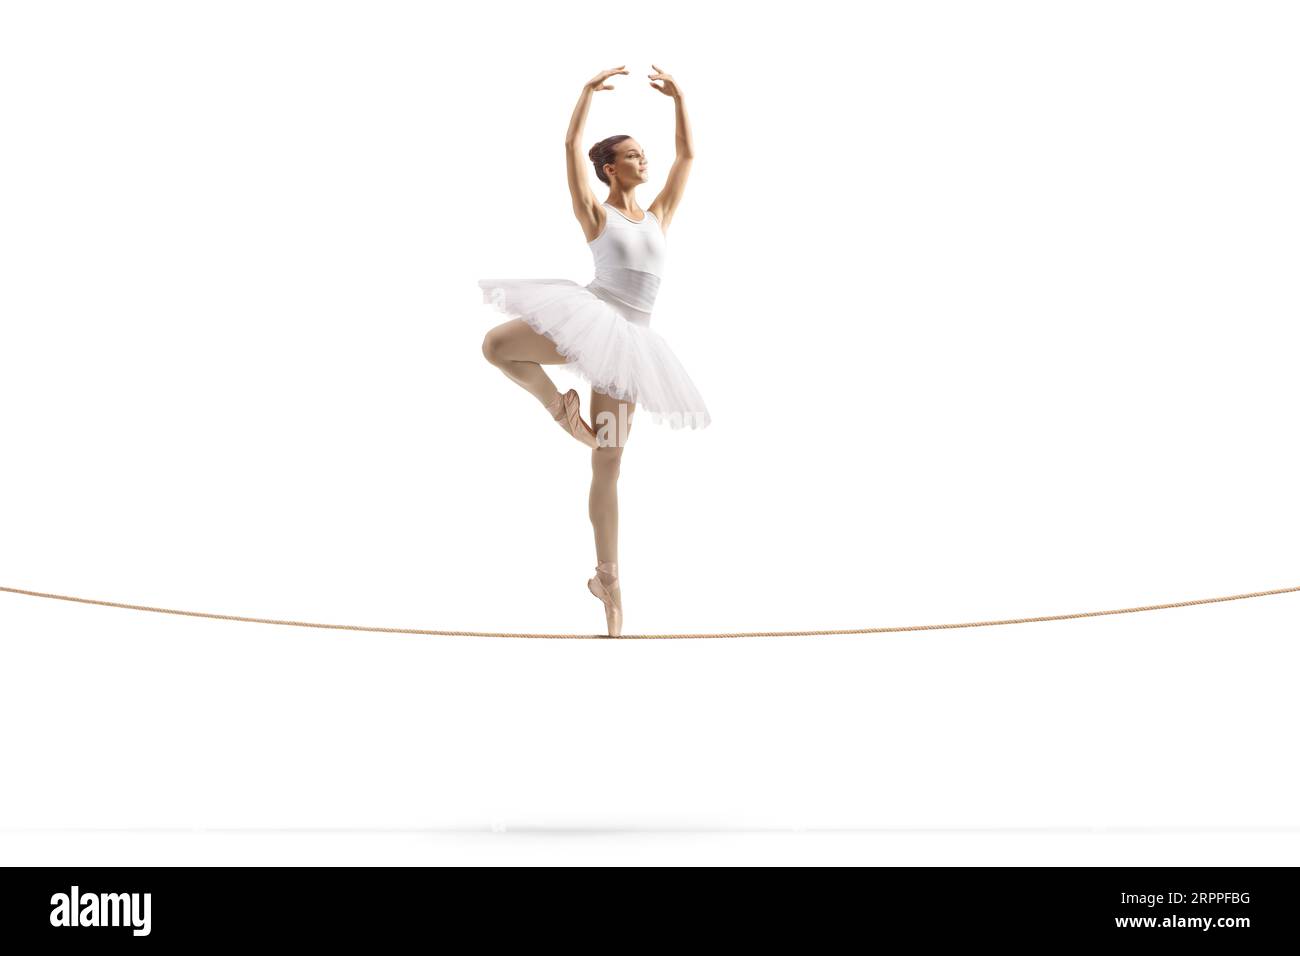 Aufnahme einer Ballerina in voller Länge, die auf einem Seilzug auf weißem Hintergrund tanzt Stockfoto